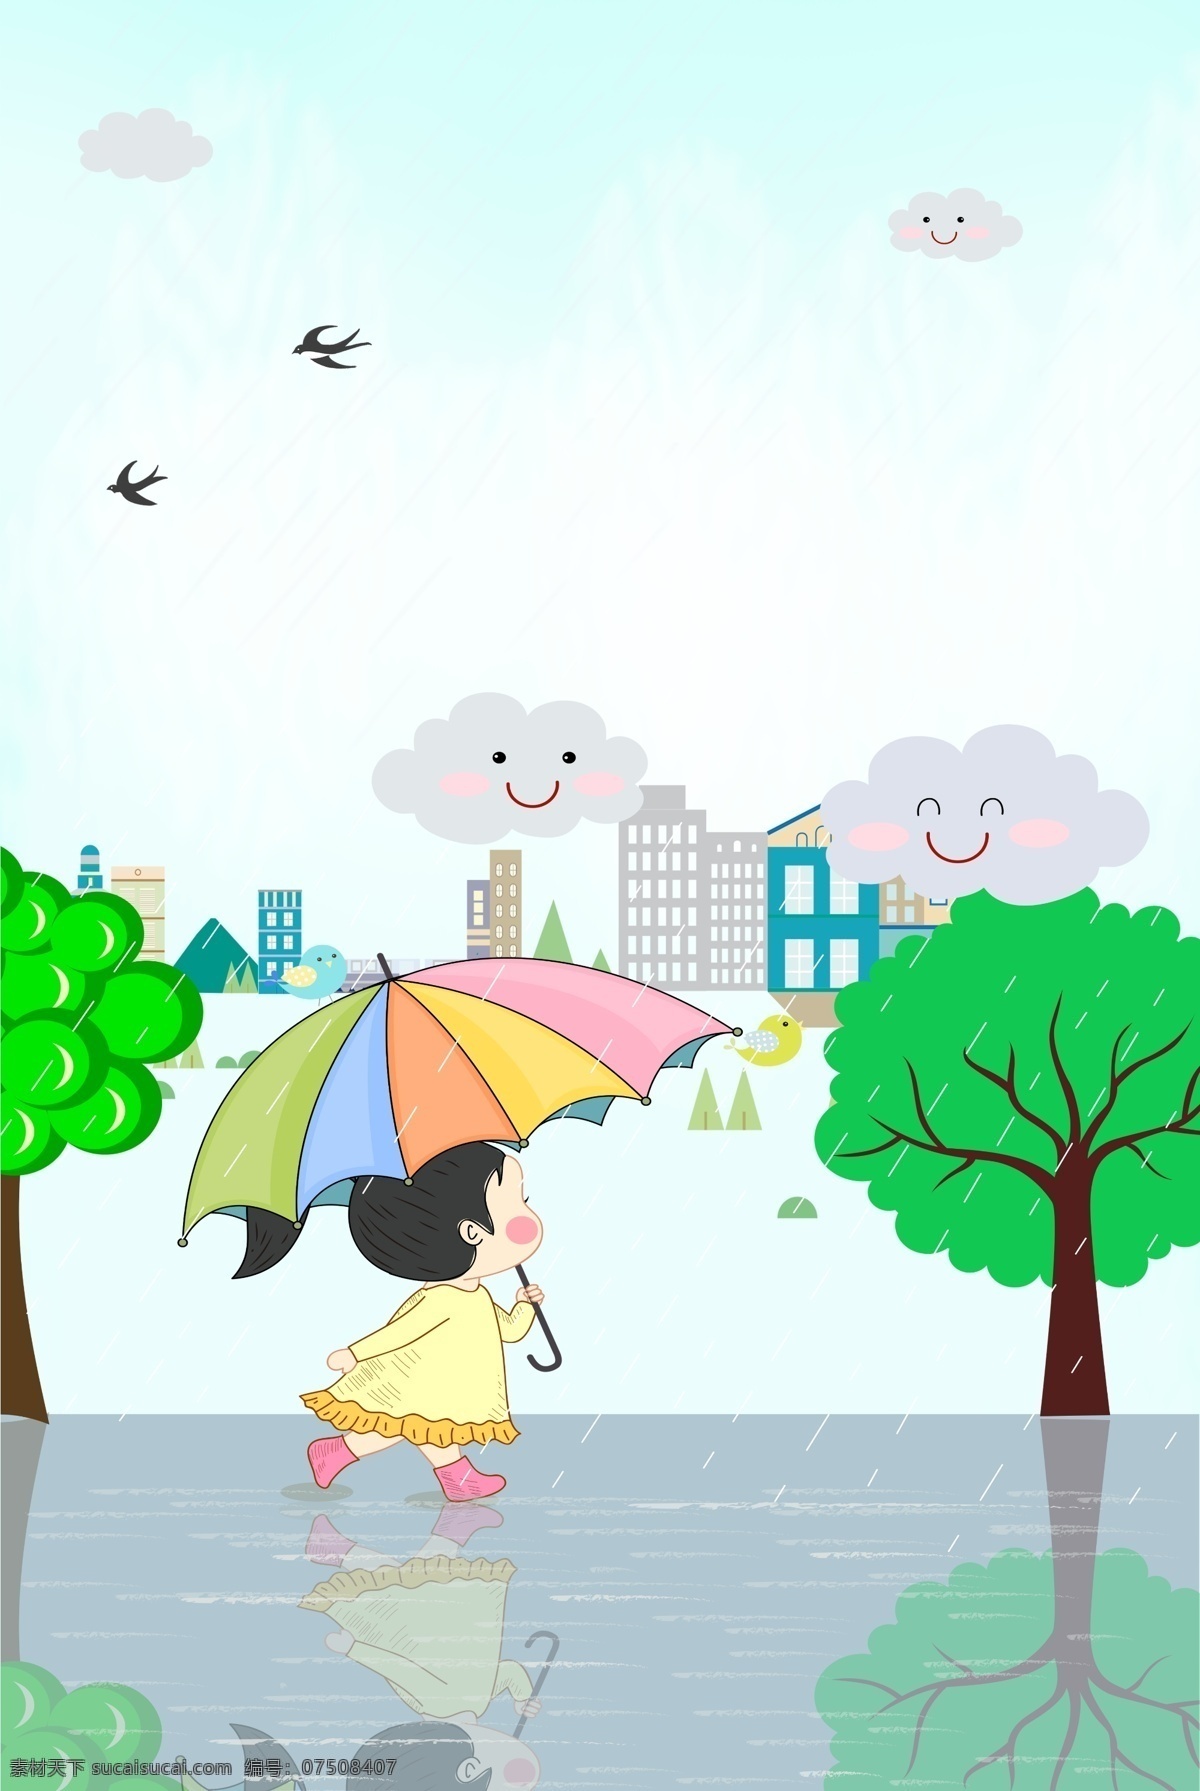 二十四节气 雨水 节气 背景 下雨 春天 立春 卡通 简约 清新 城市 人物